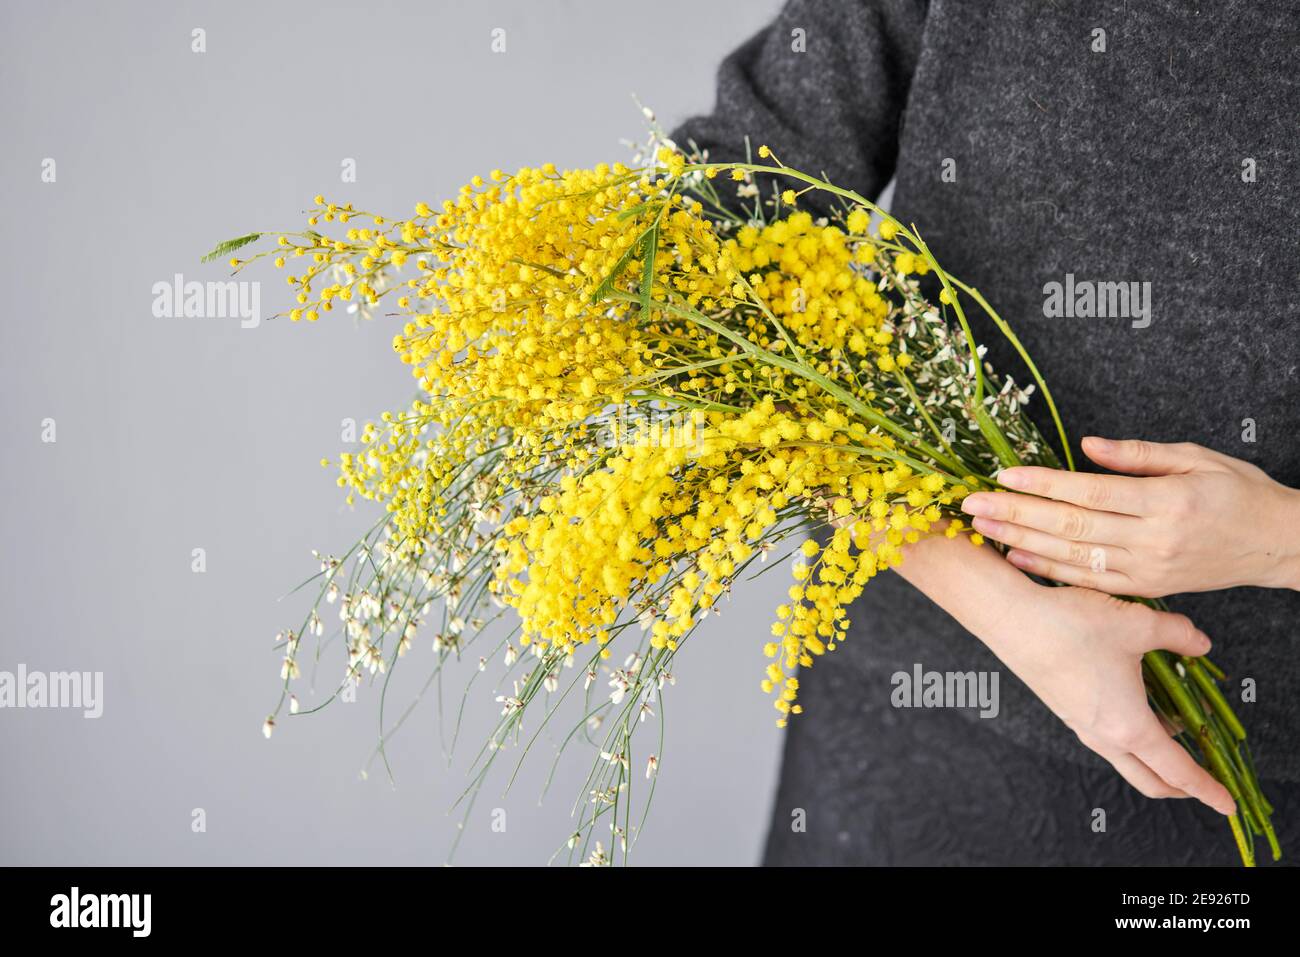 De belles branches de mimosa et de genista dans les mains des femmes.  Fleurs jaunes ensoleillées sur une table blanche près de la fenêtre.  Livraison fleur coupée fraîche. Européen Photo Stock -